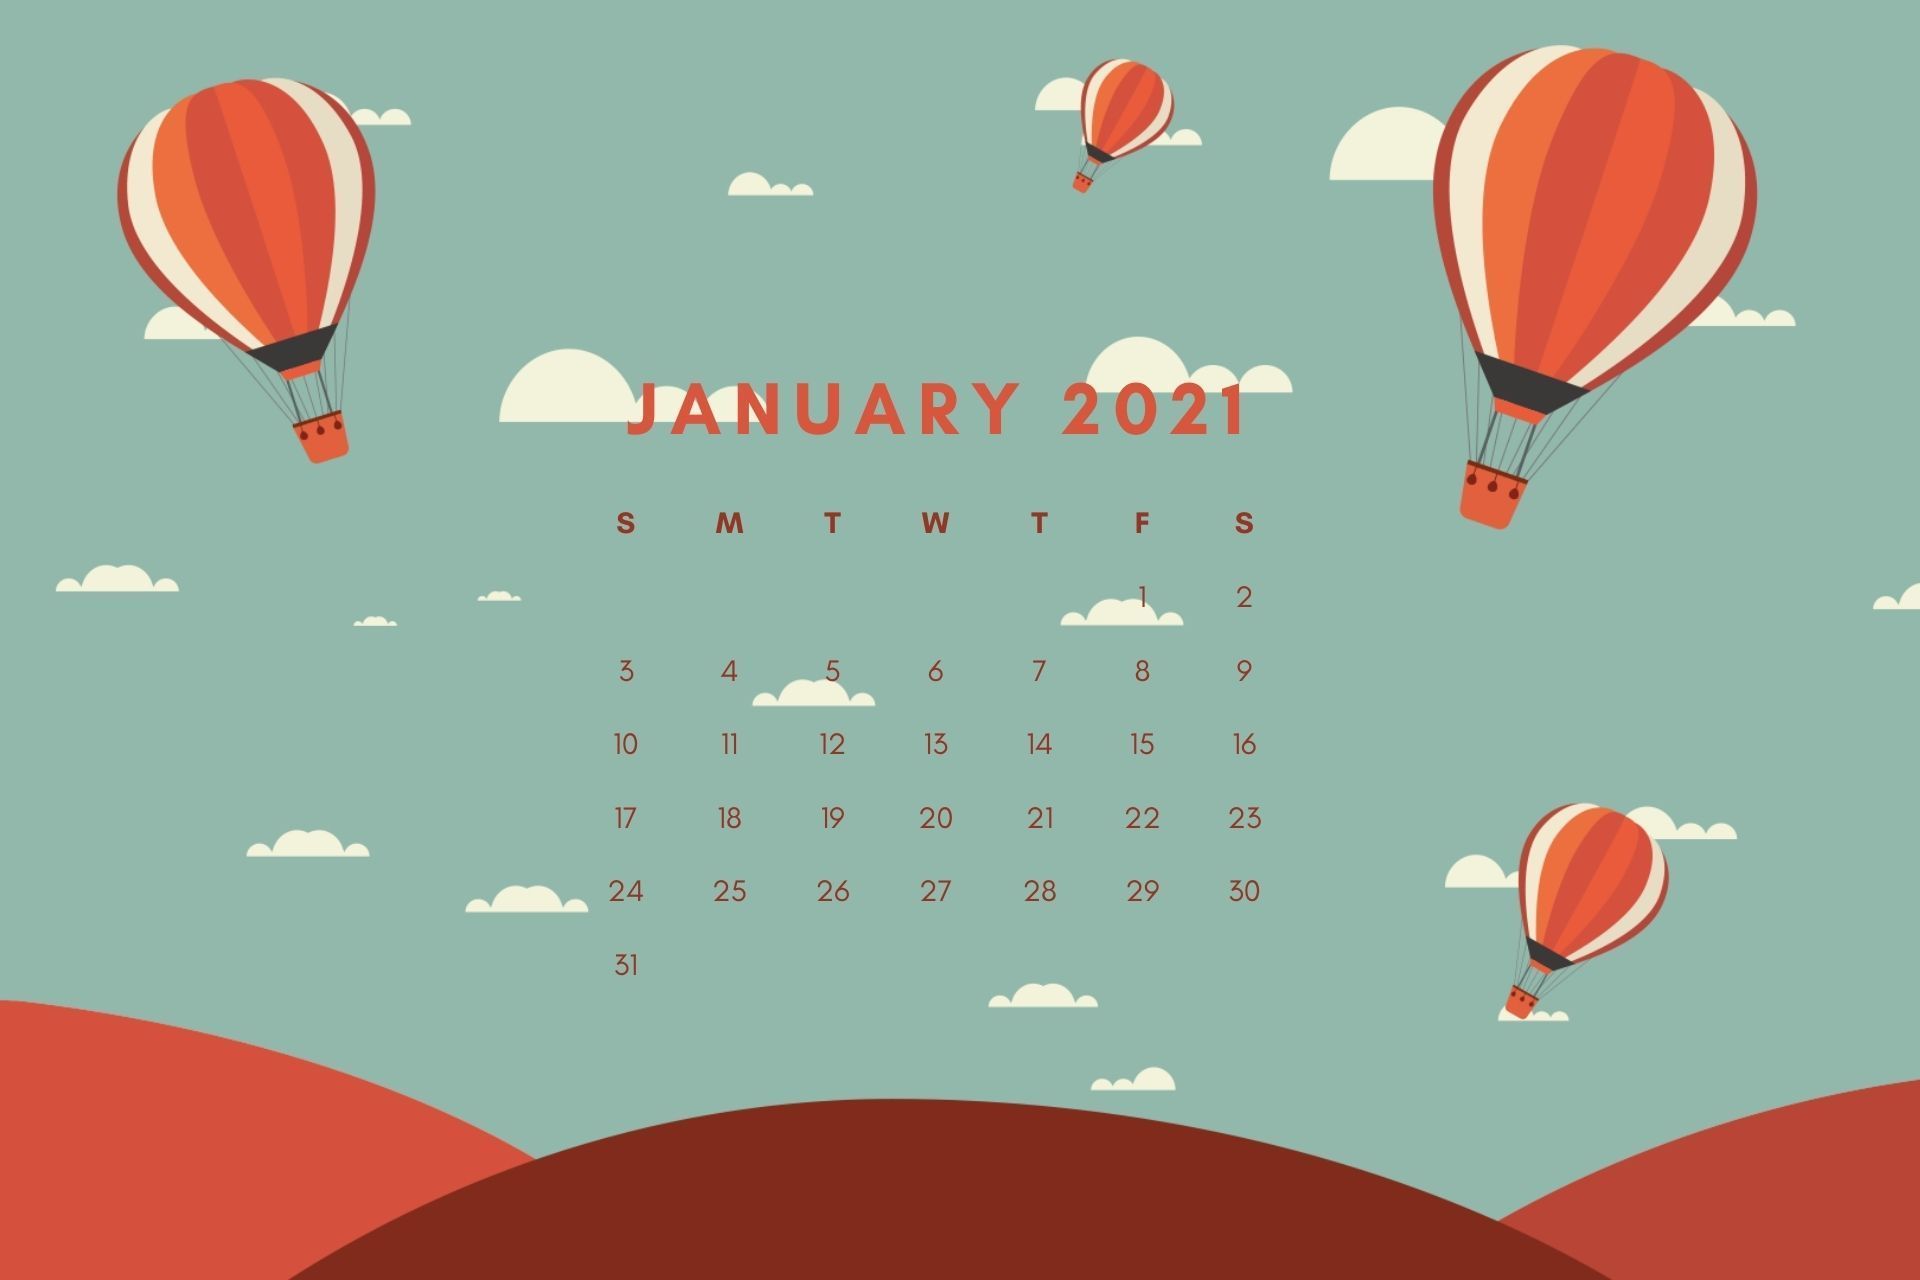 Những ngày đầu năm mới luôn đặc biệt và hứa hẹn nhiều điều tốt đẹp. Bạn đã chuẩn bị cho mình một lịch tháng 1 đẹp để điểm tô cho những dự định trong năm mới chưa? Tìm hiểu ngay!